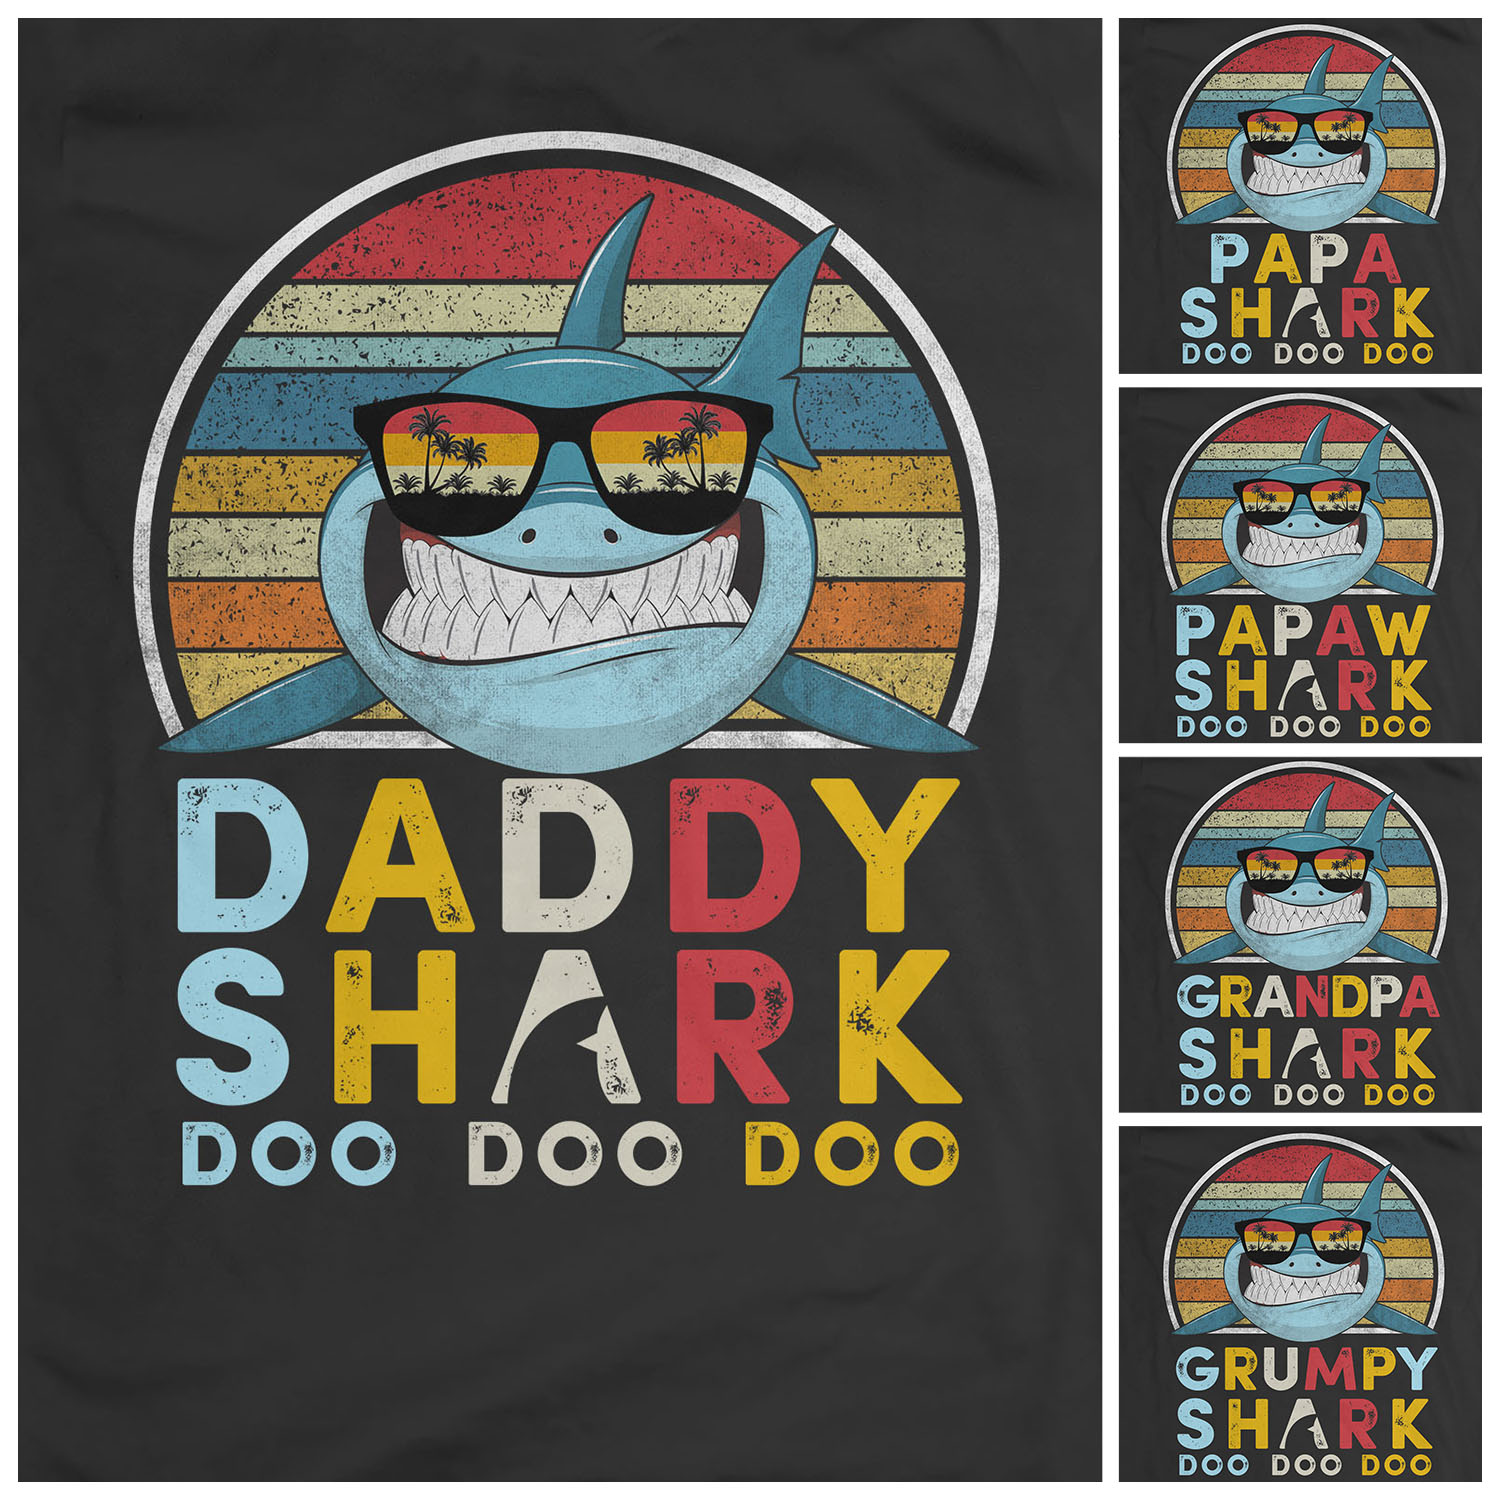 daddy shark do do do
papa shark do do do
papaw shark do do do
grandpa shark do do do
grumpy shark do do do